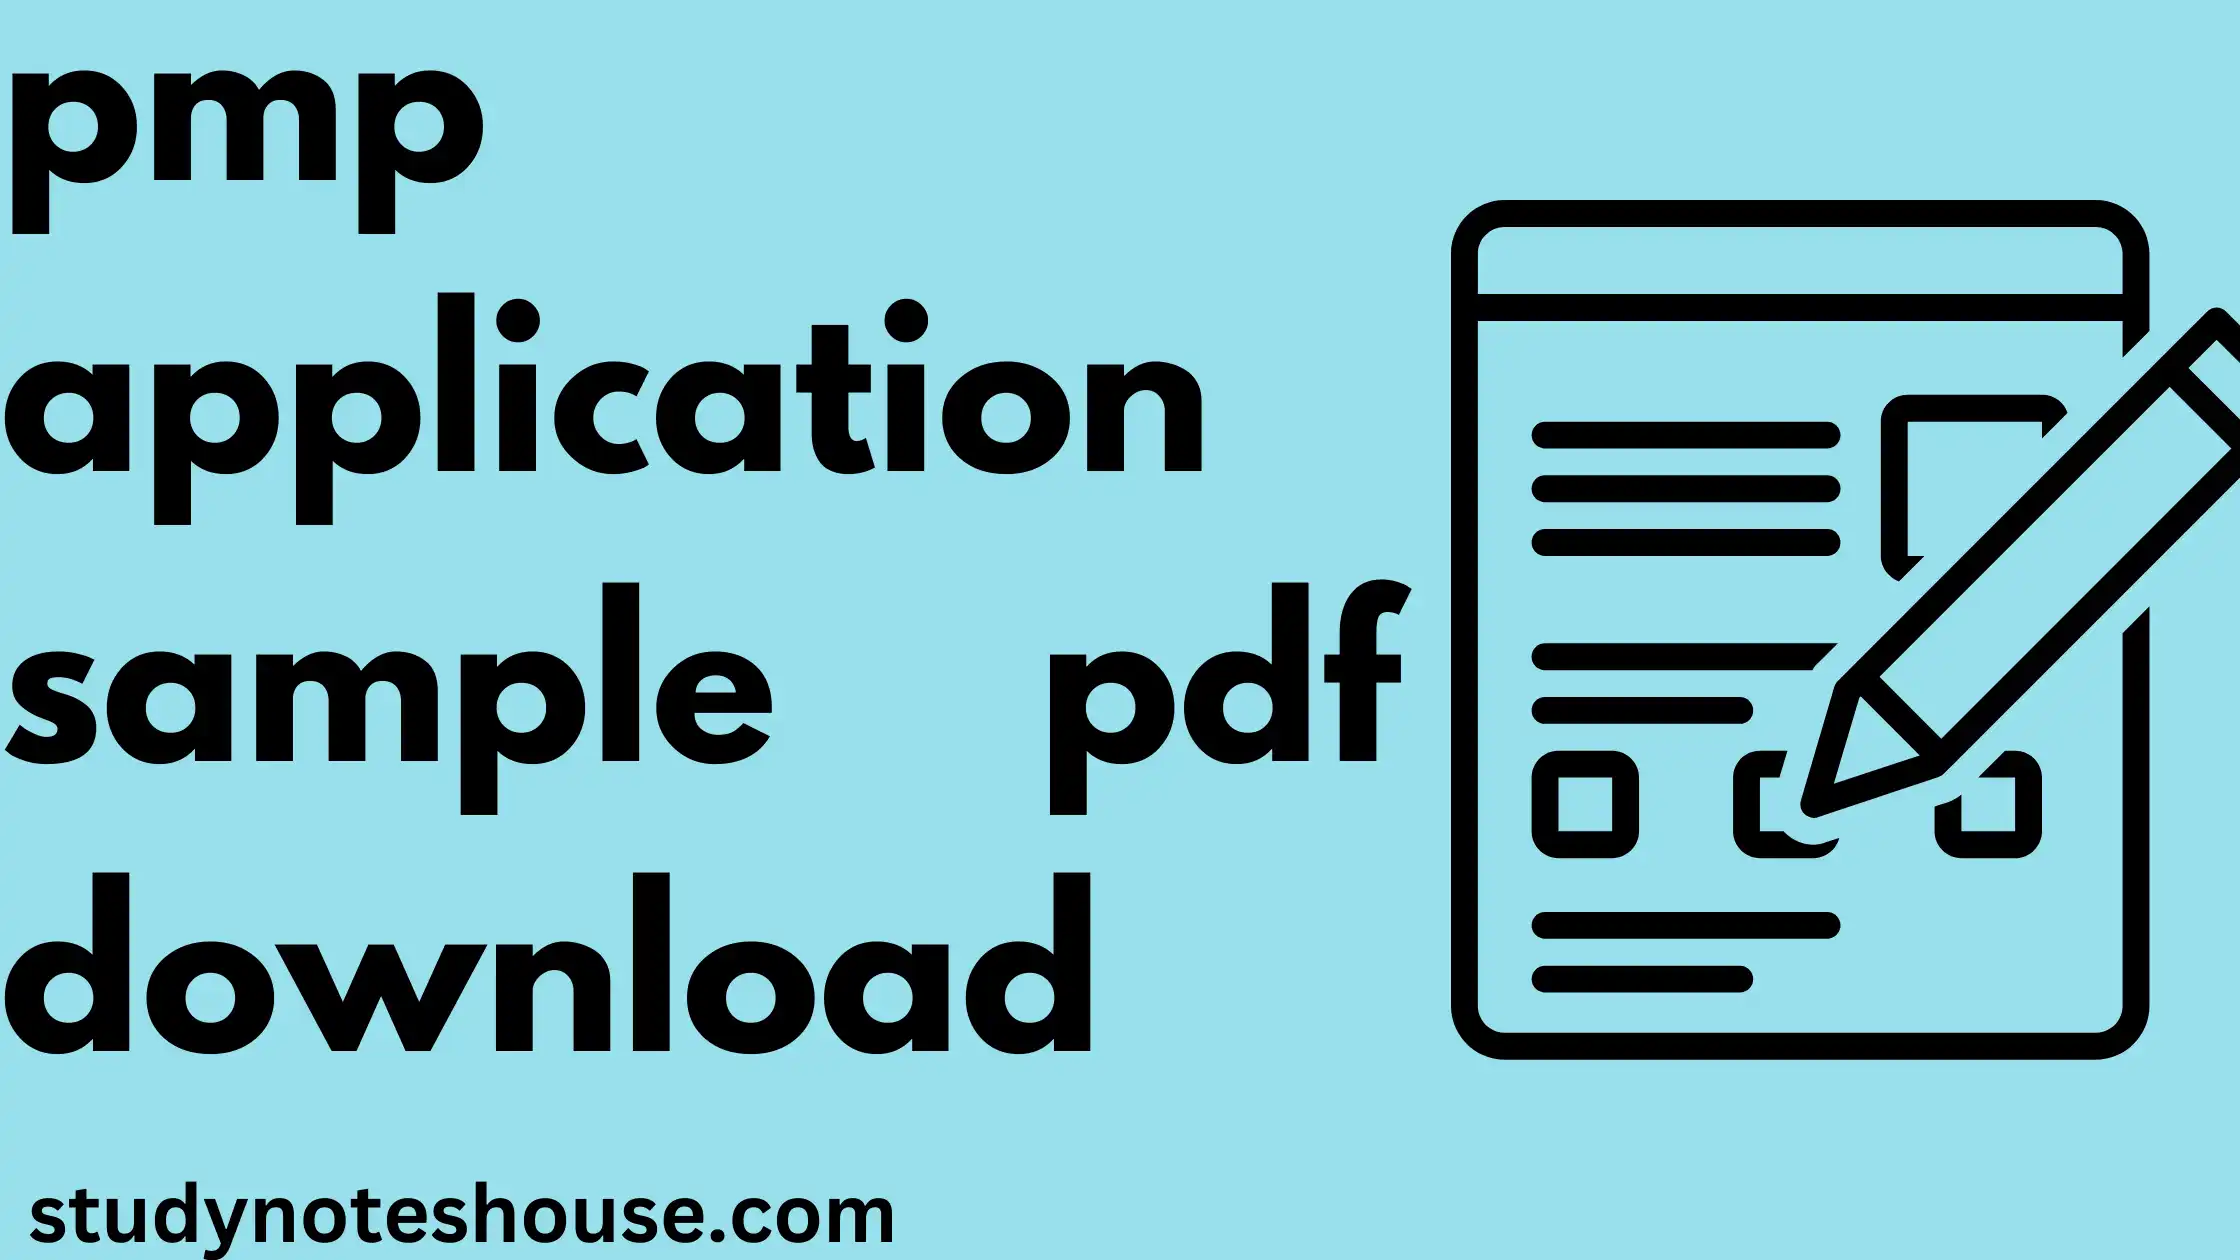 pmp application sample pdf download